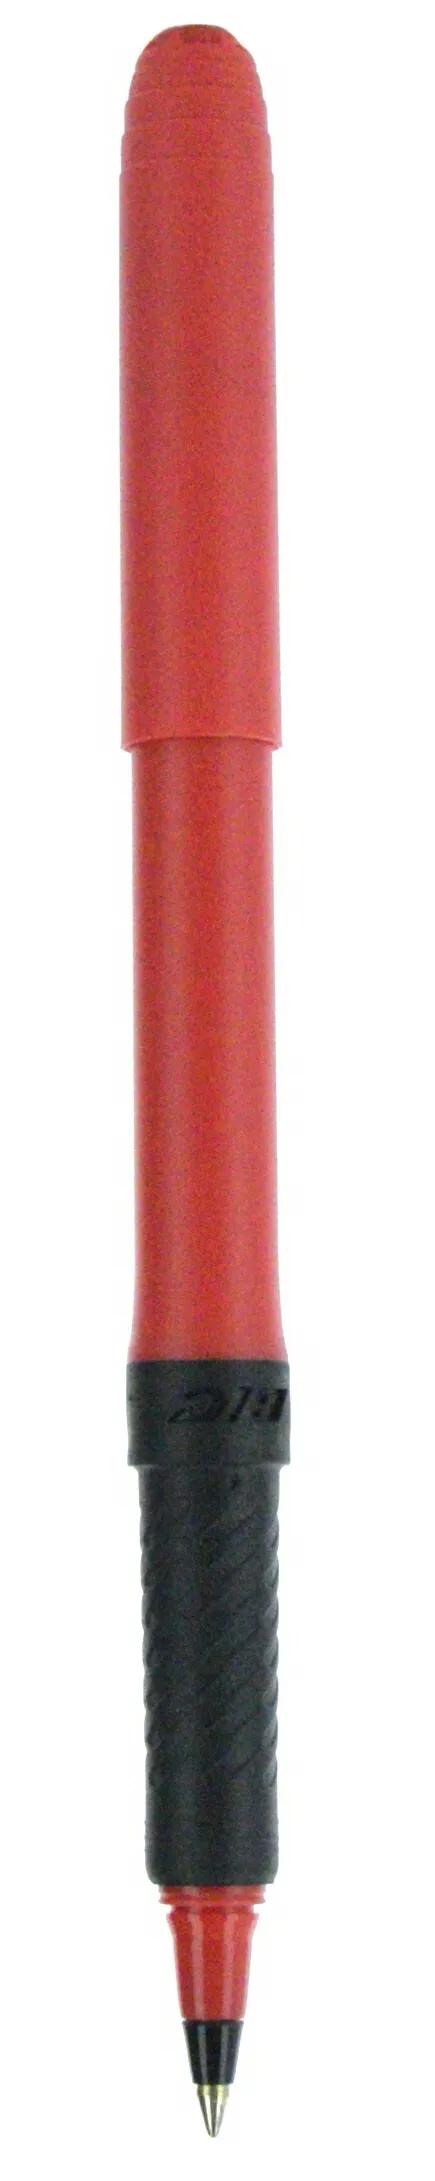 BIC® Grip Roller Pen 88 of 147